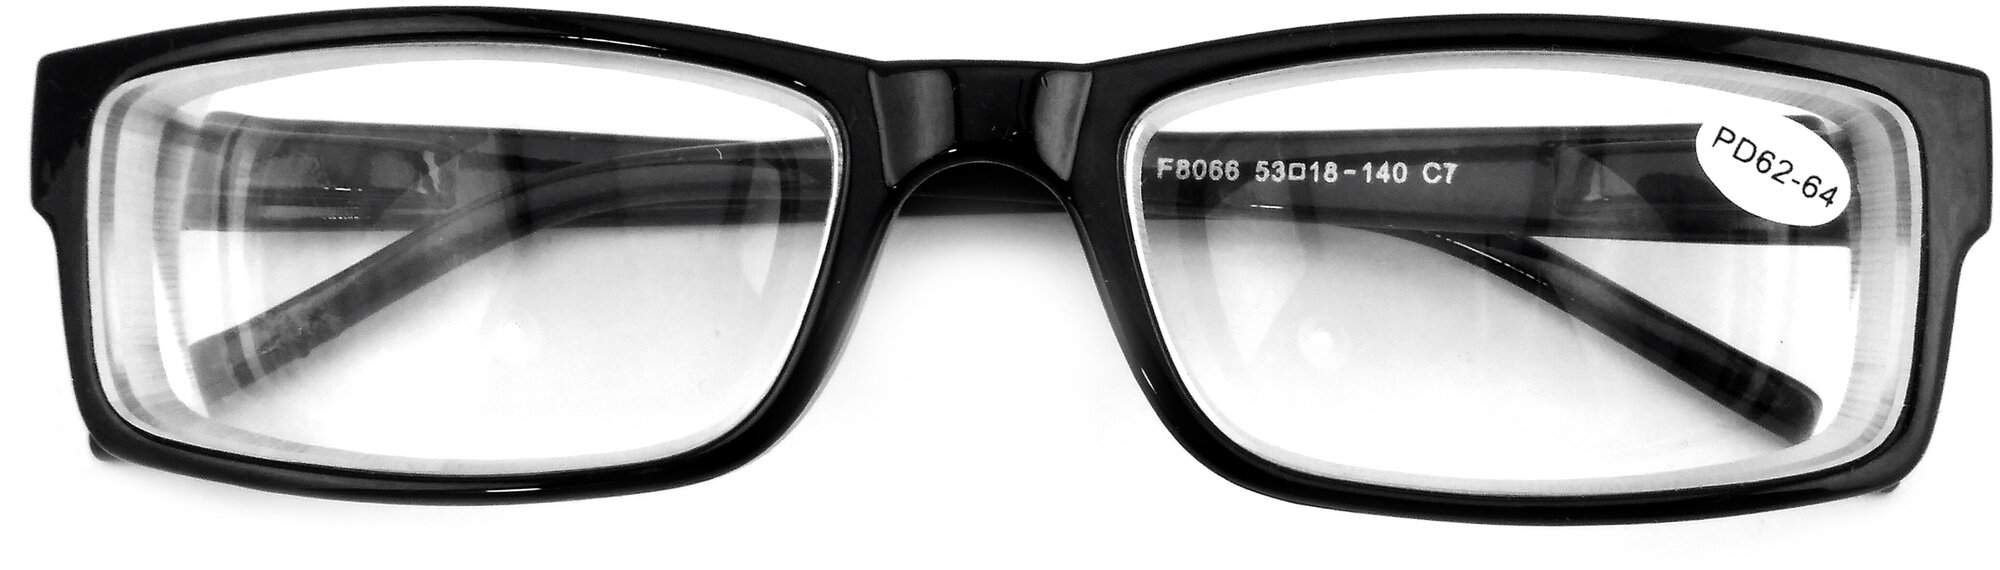 Очки Готовые Корригирующие Focus 8066 (Рц 62-64) Диоптрии -8.0